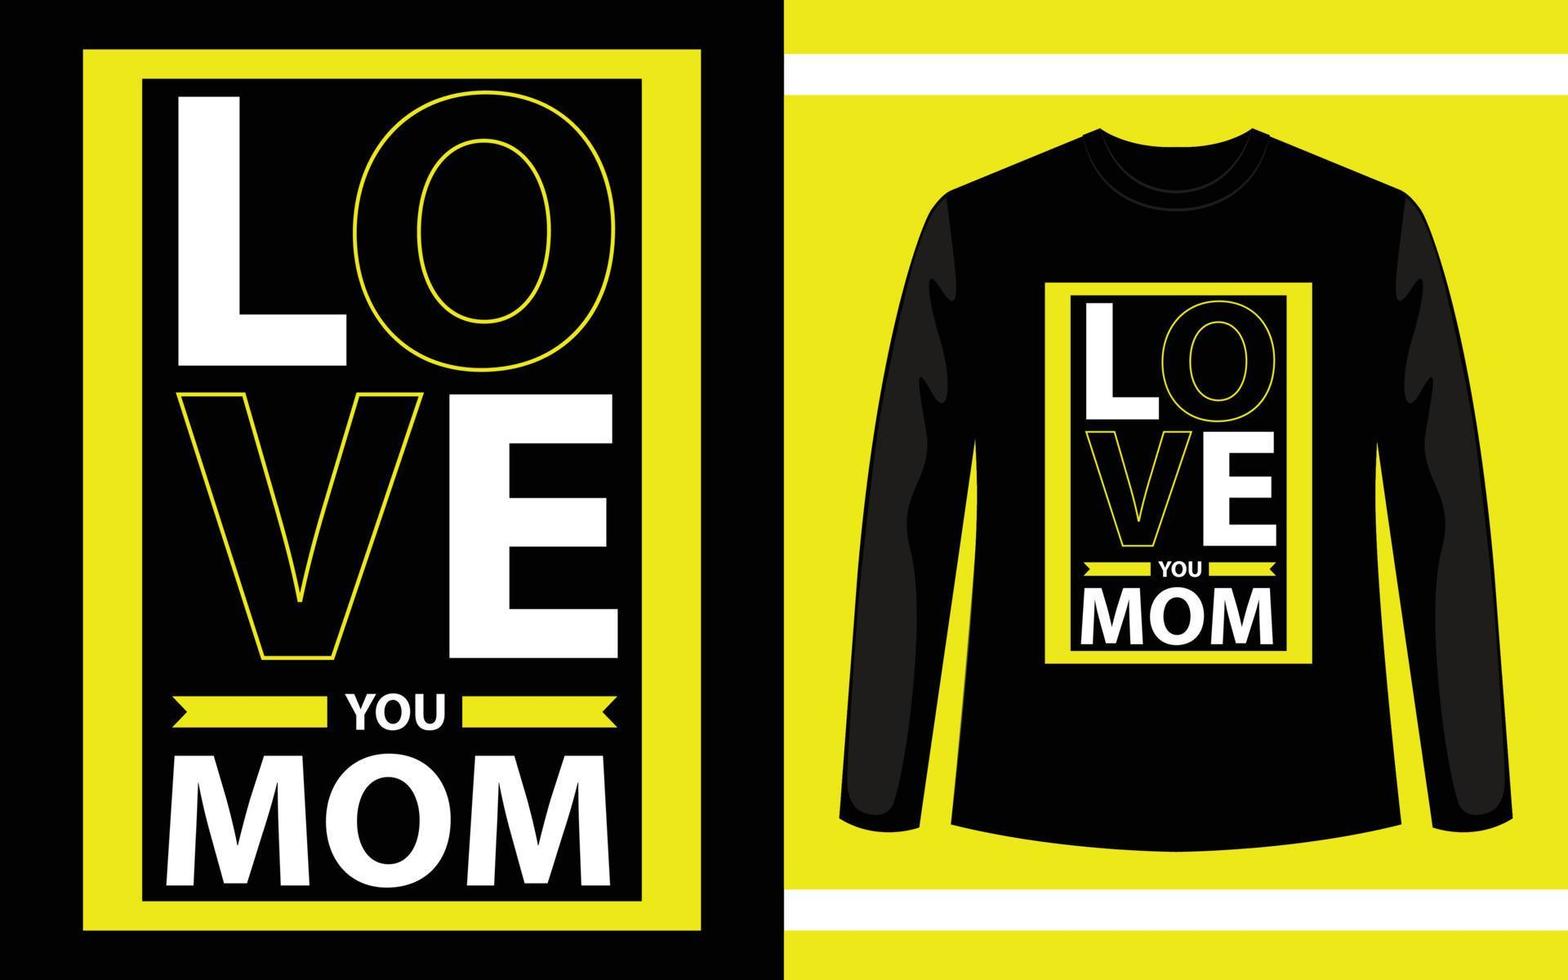 älskar dig mamma typografi t-shirt design vektor